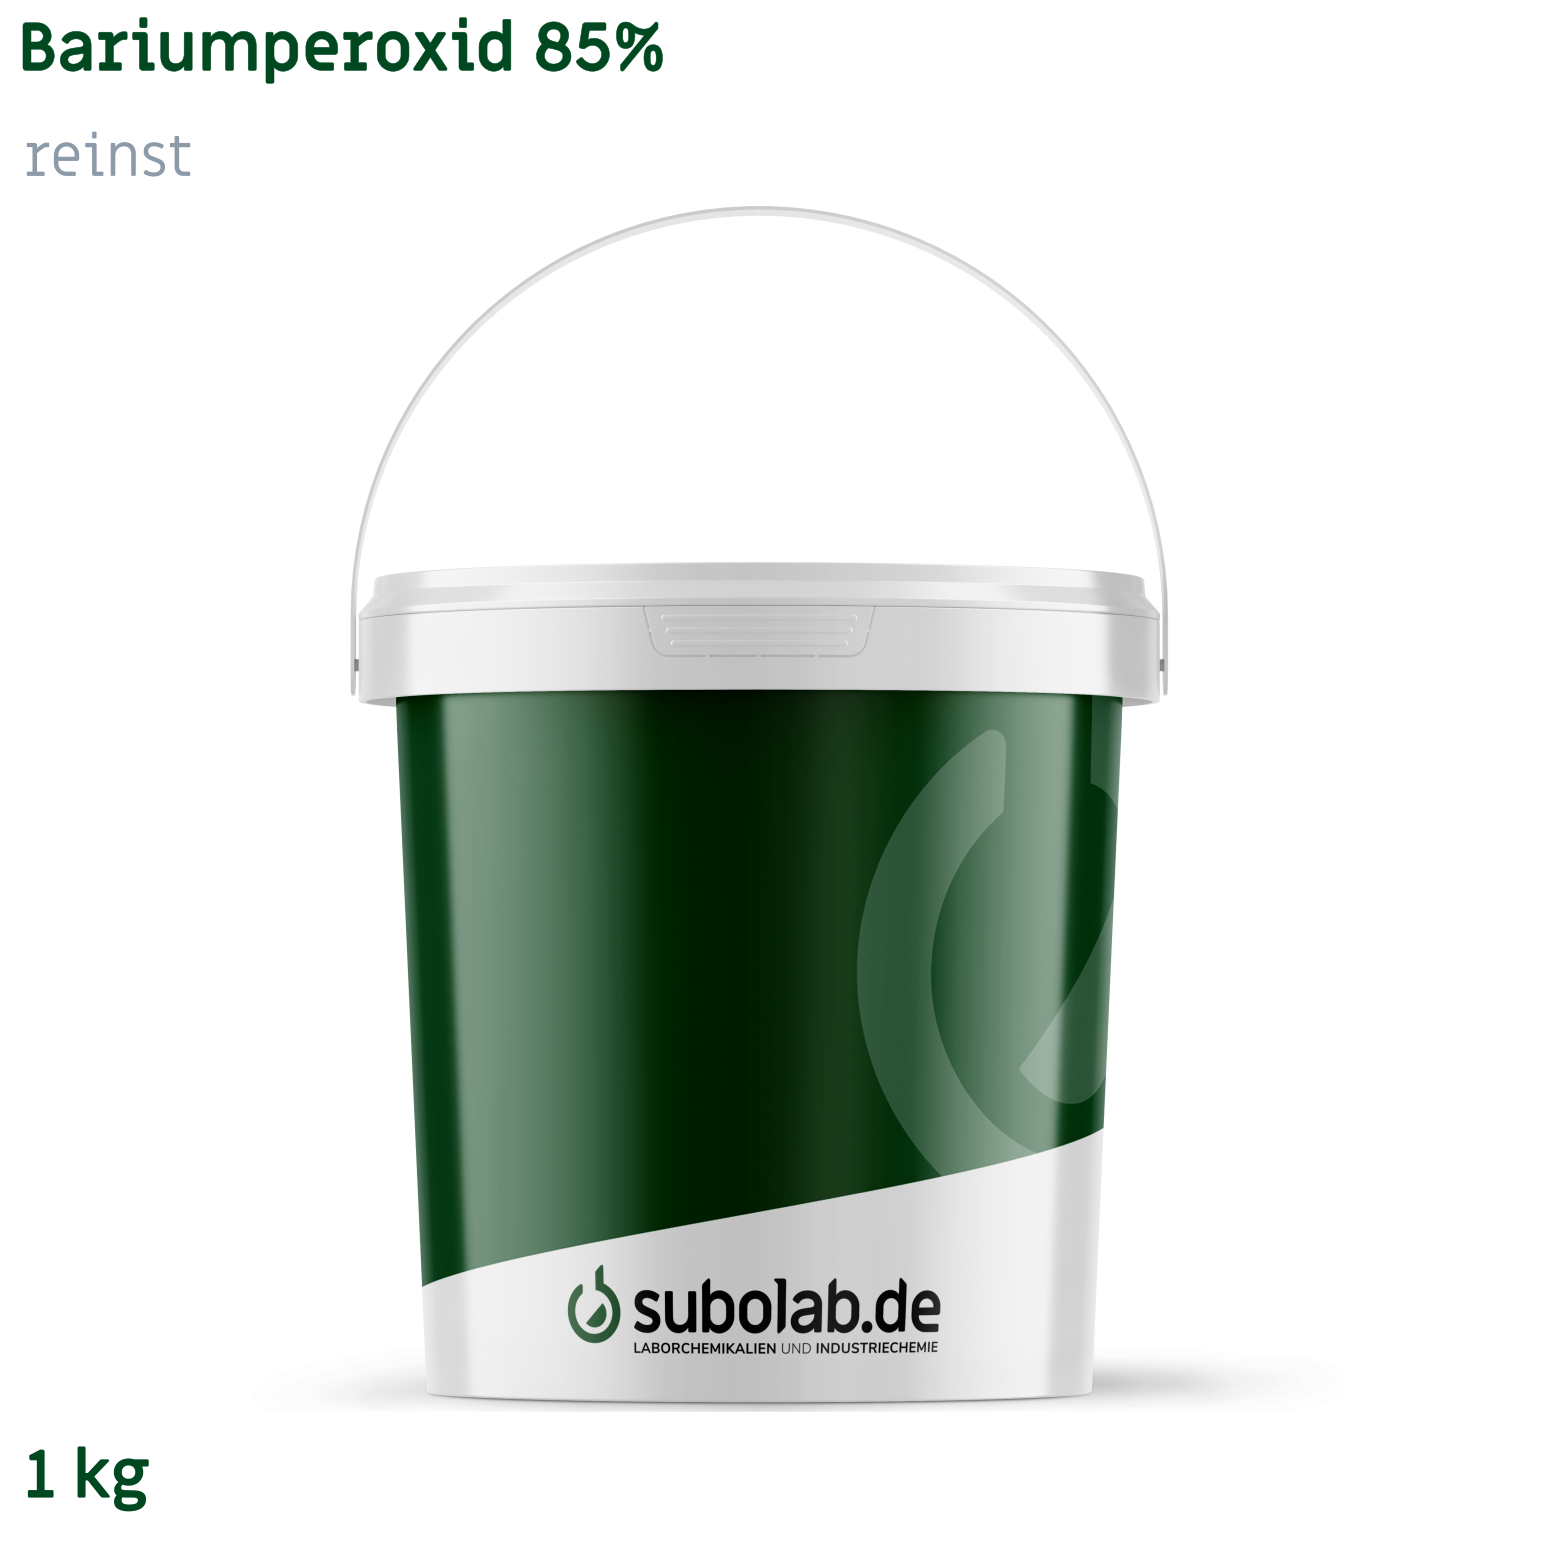 Bild von Bariumperoxid 85% reinst (1 kg)